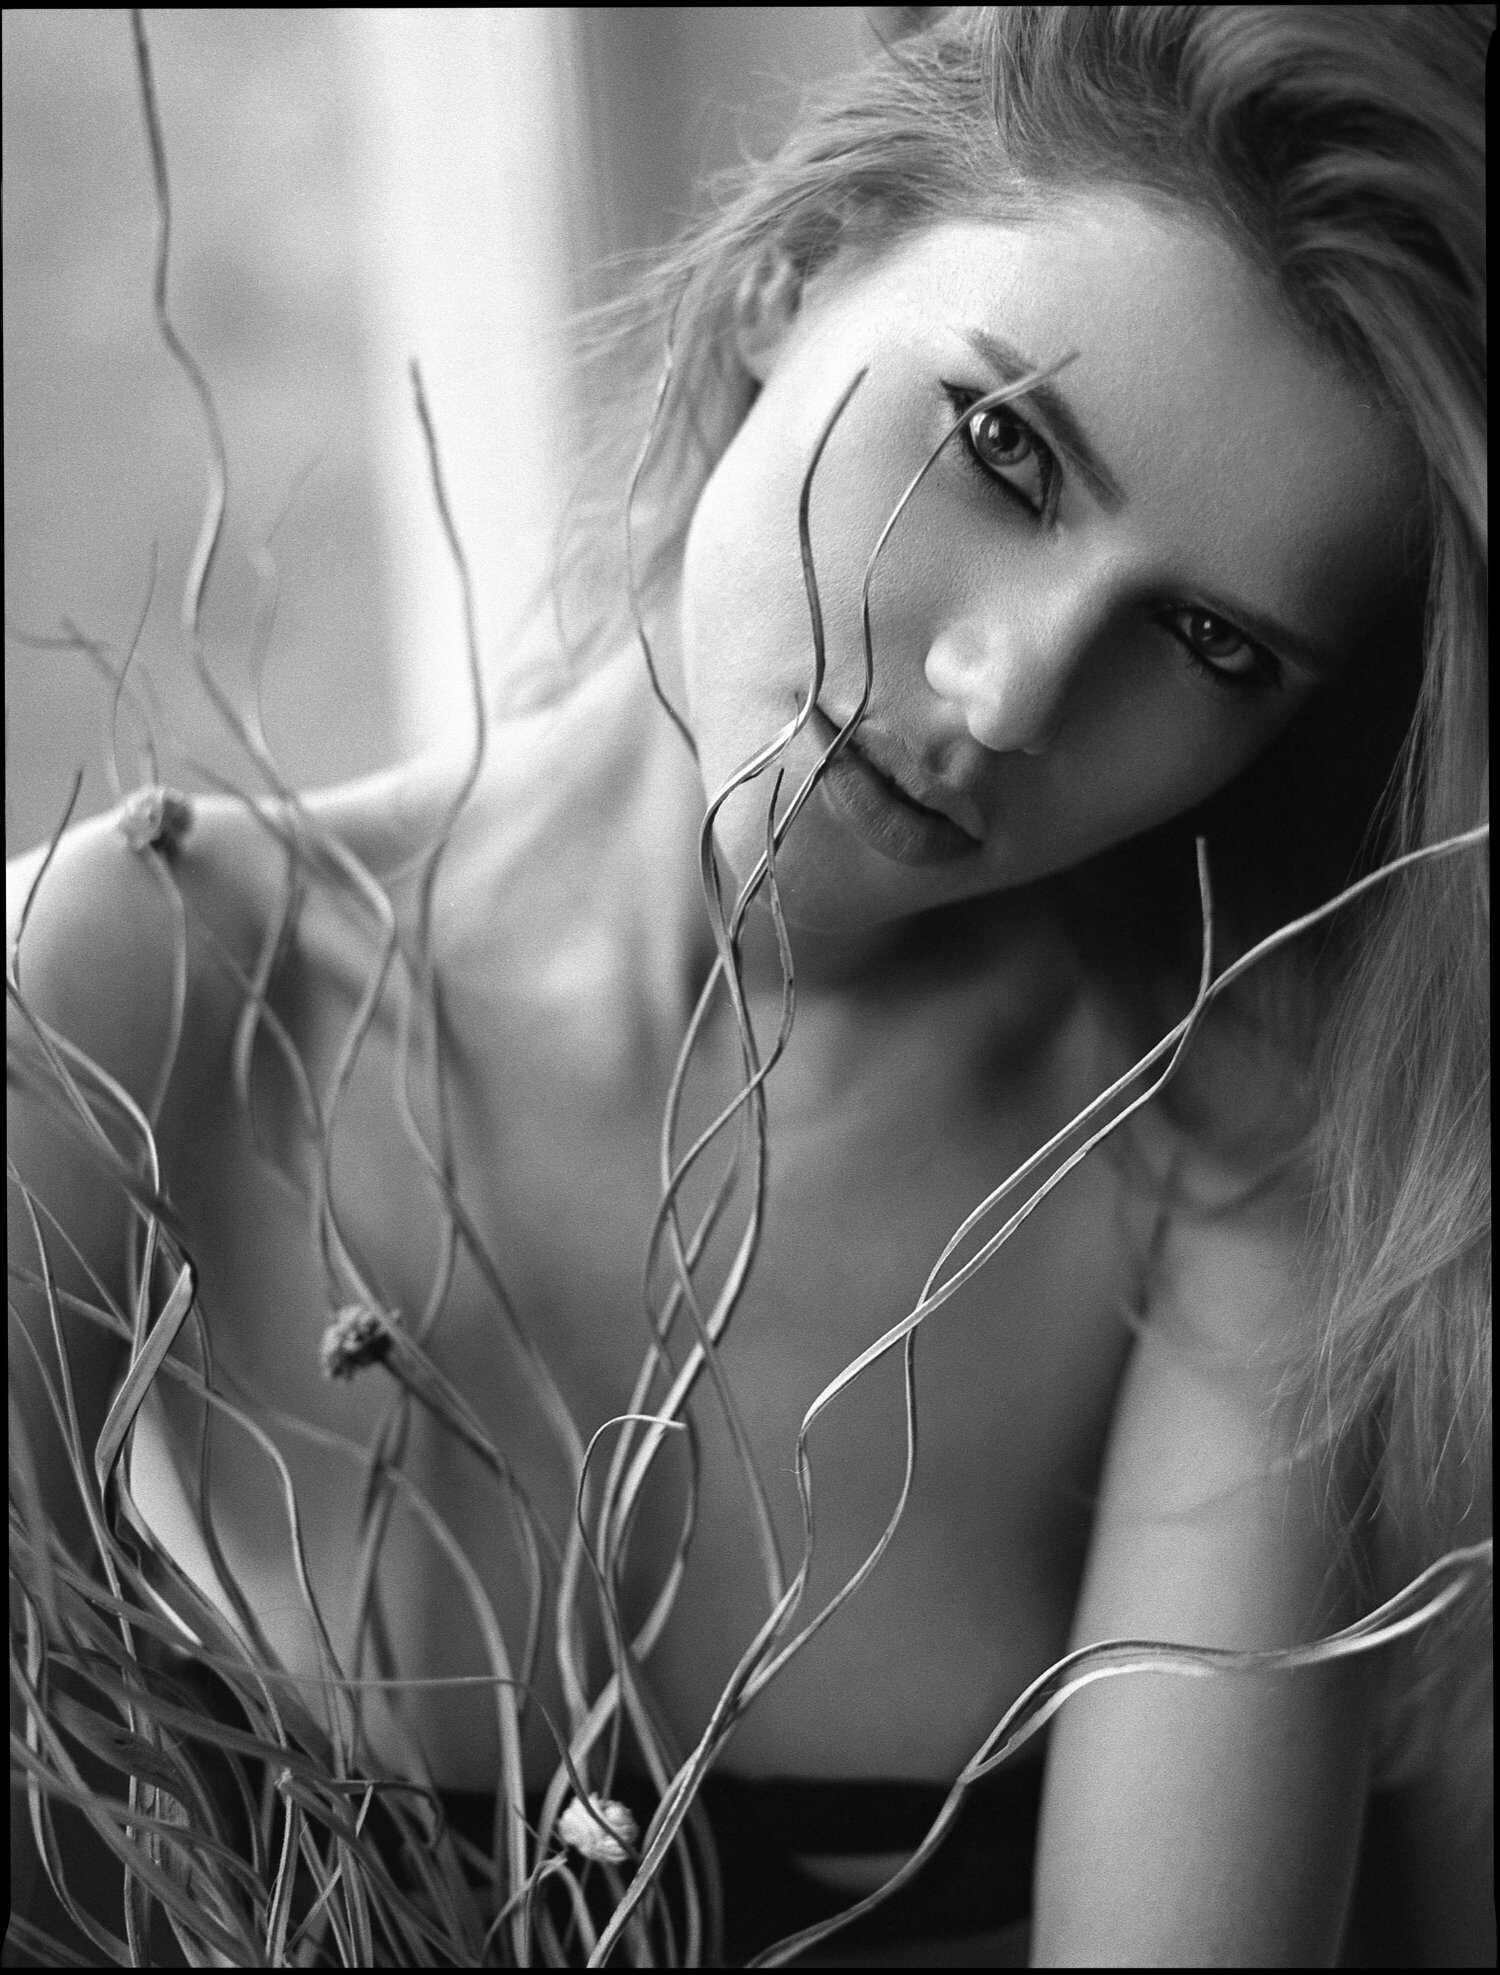 Γυμνές φωτογραφίες της μουνάρας μοντέλου Olesia Alter